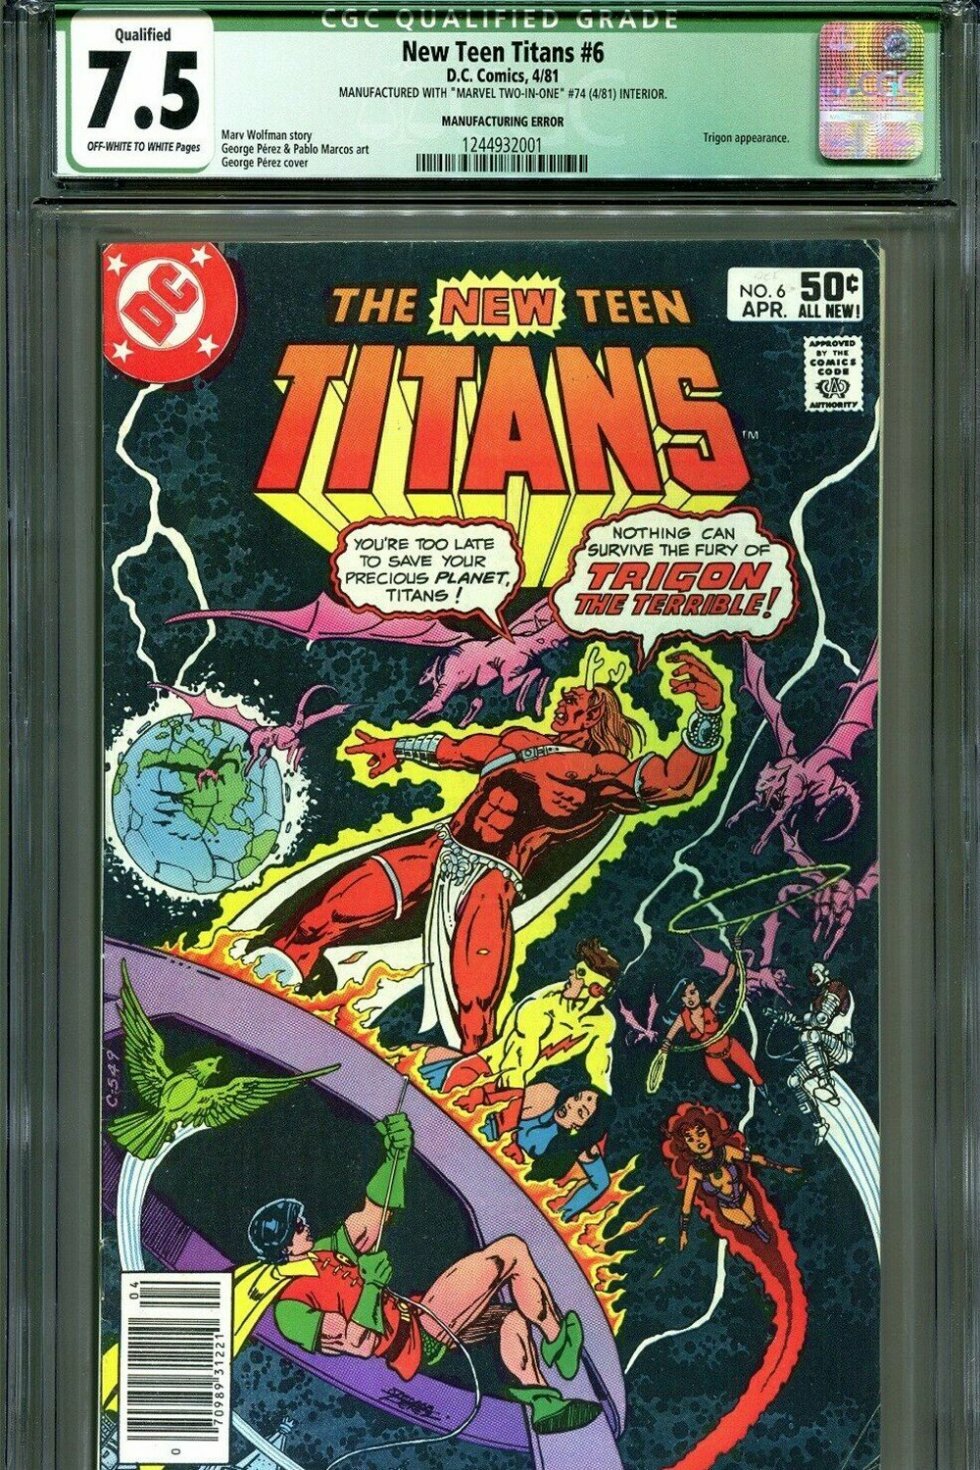 Marvel-tegneserie med fejlprintet DC Comics-forside på auktion til et svimlende beløb